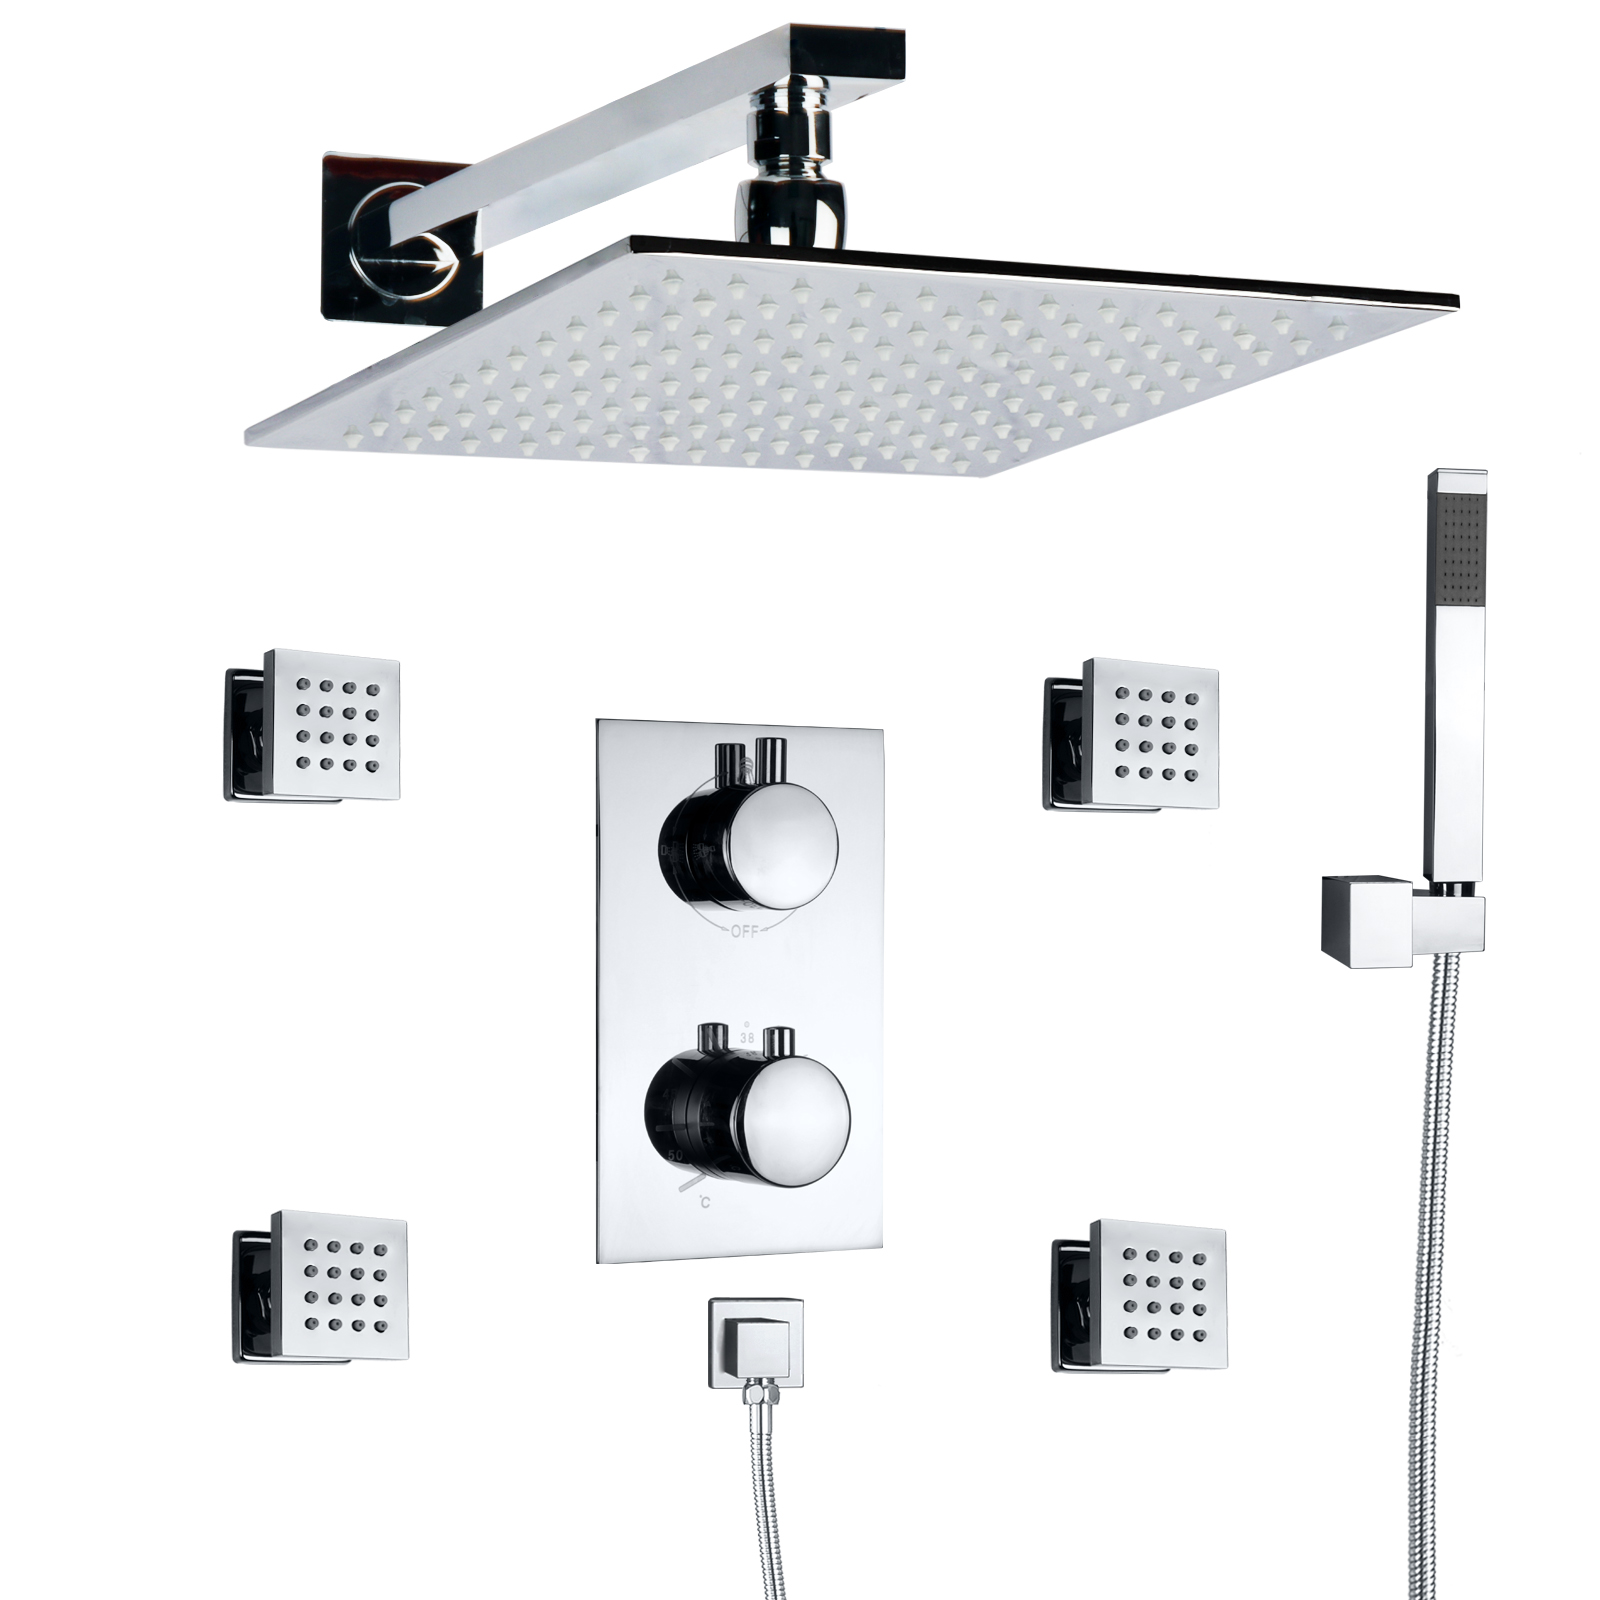 Sistema de ducha termostático de montaje en pared con LED, cromado pulido, sistema de ducha de mano tipo lluvia